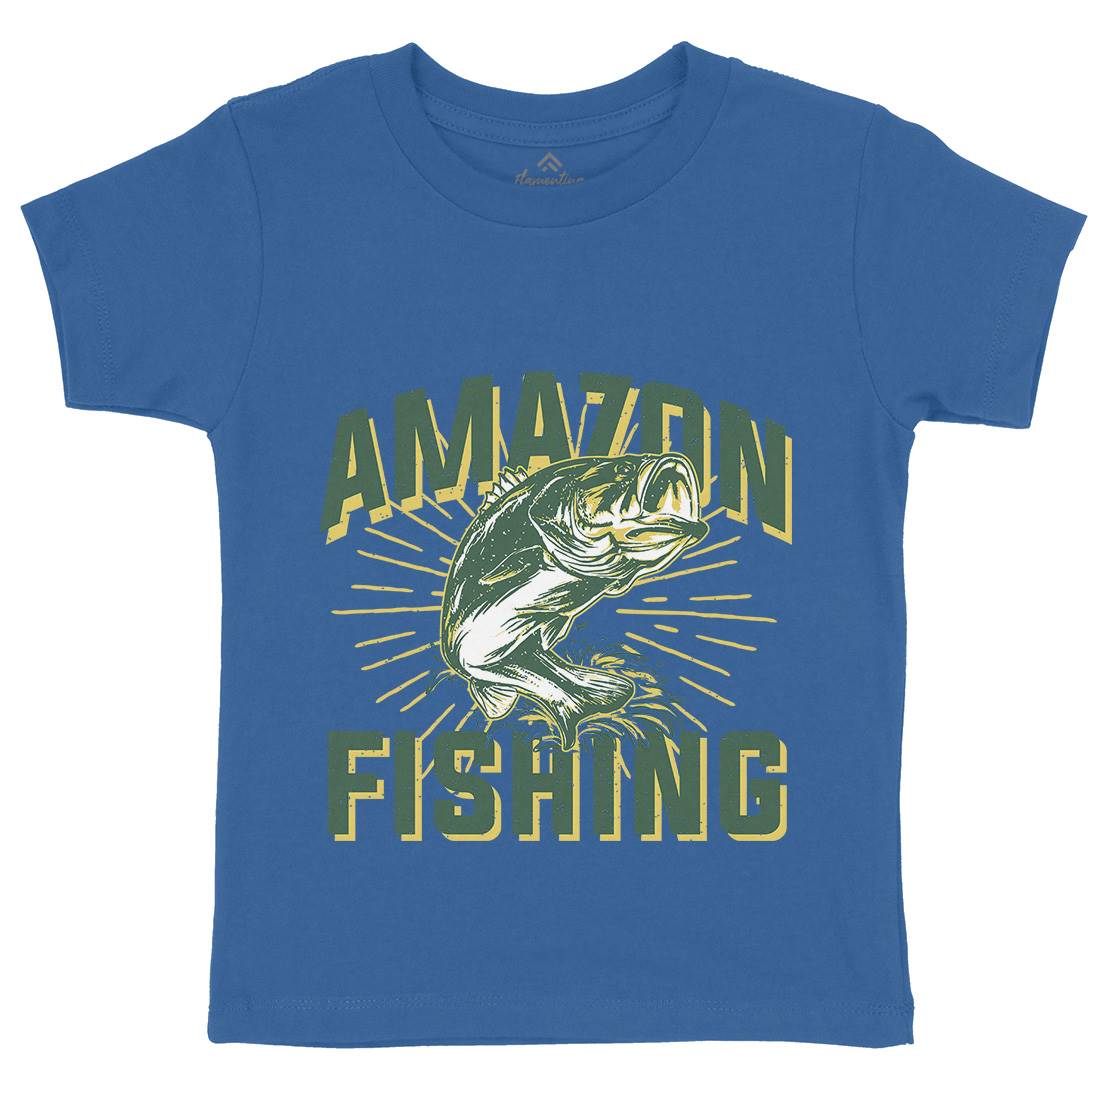 Amazon Kids Organic Crew Neck T-Shirt Fishing B678